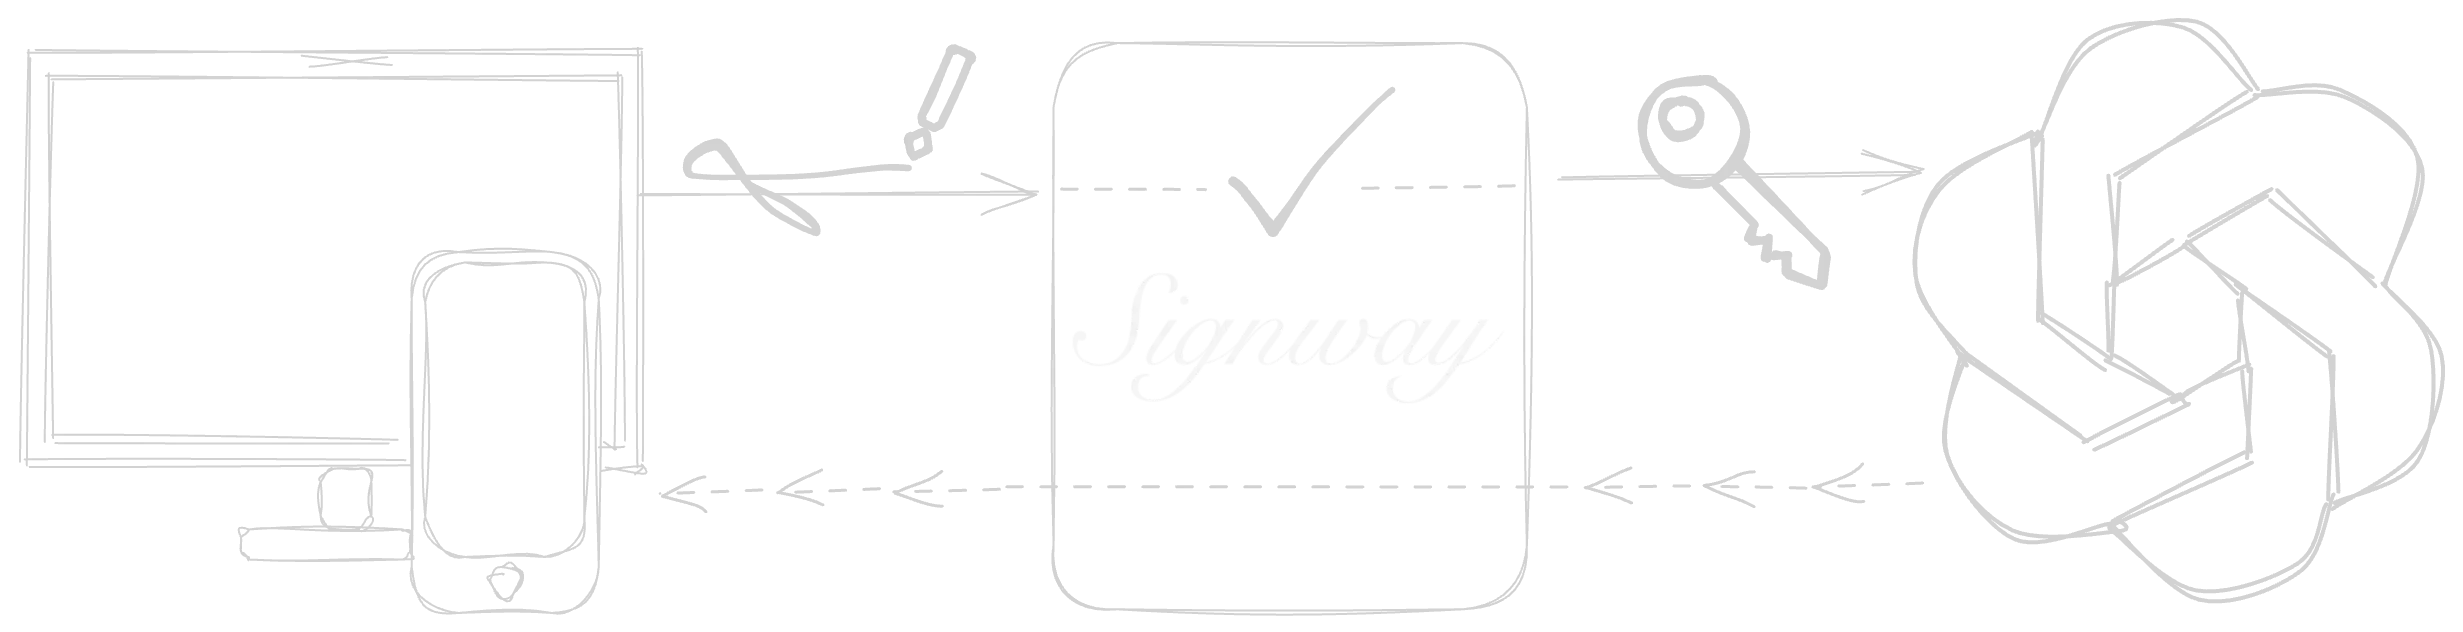 Signway simple scheme